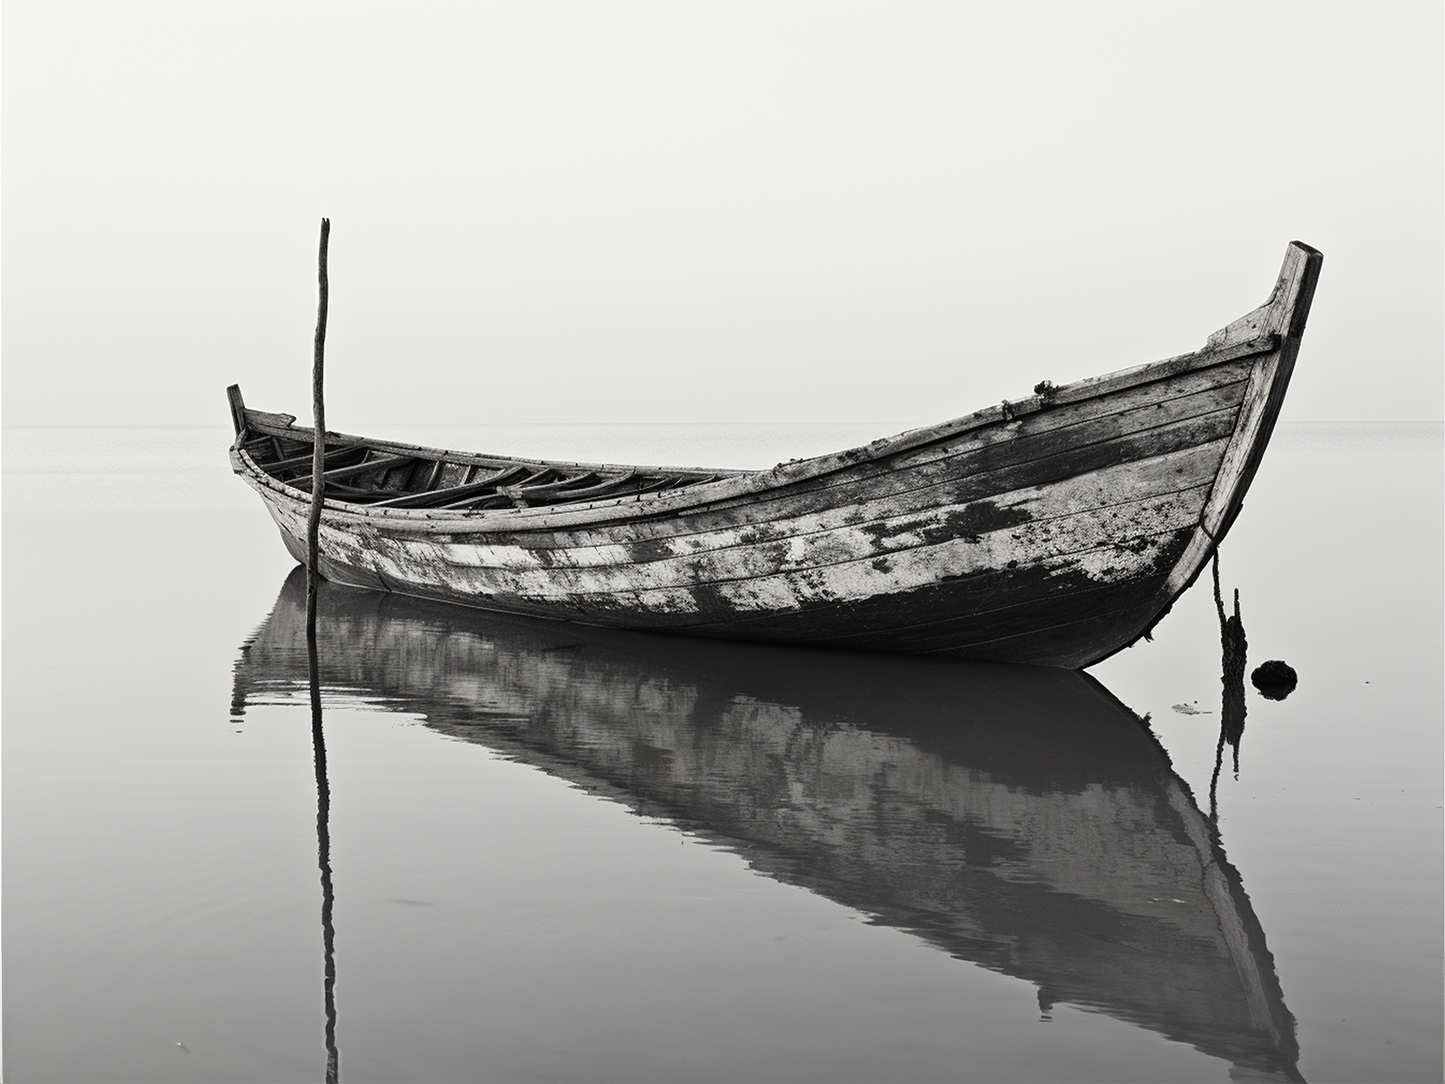 Photographie monochrome d'une barque calme sur l'eau.